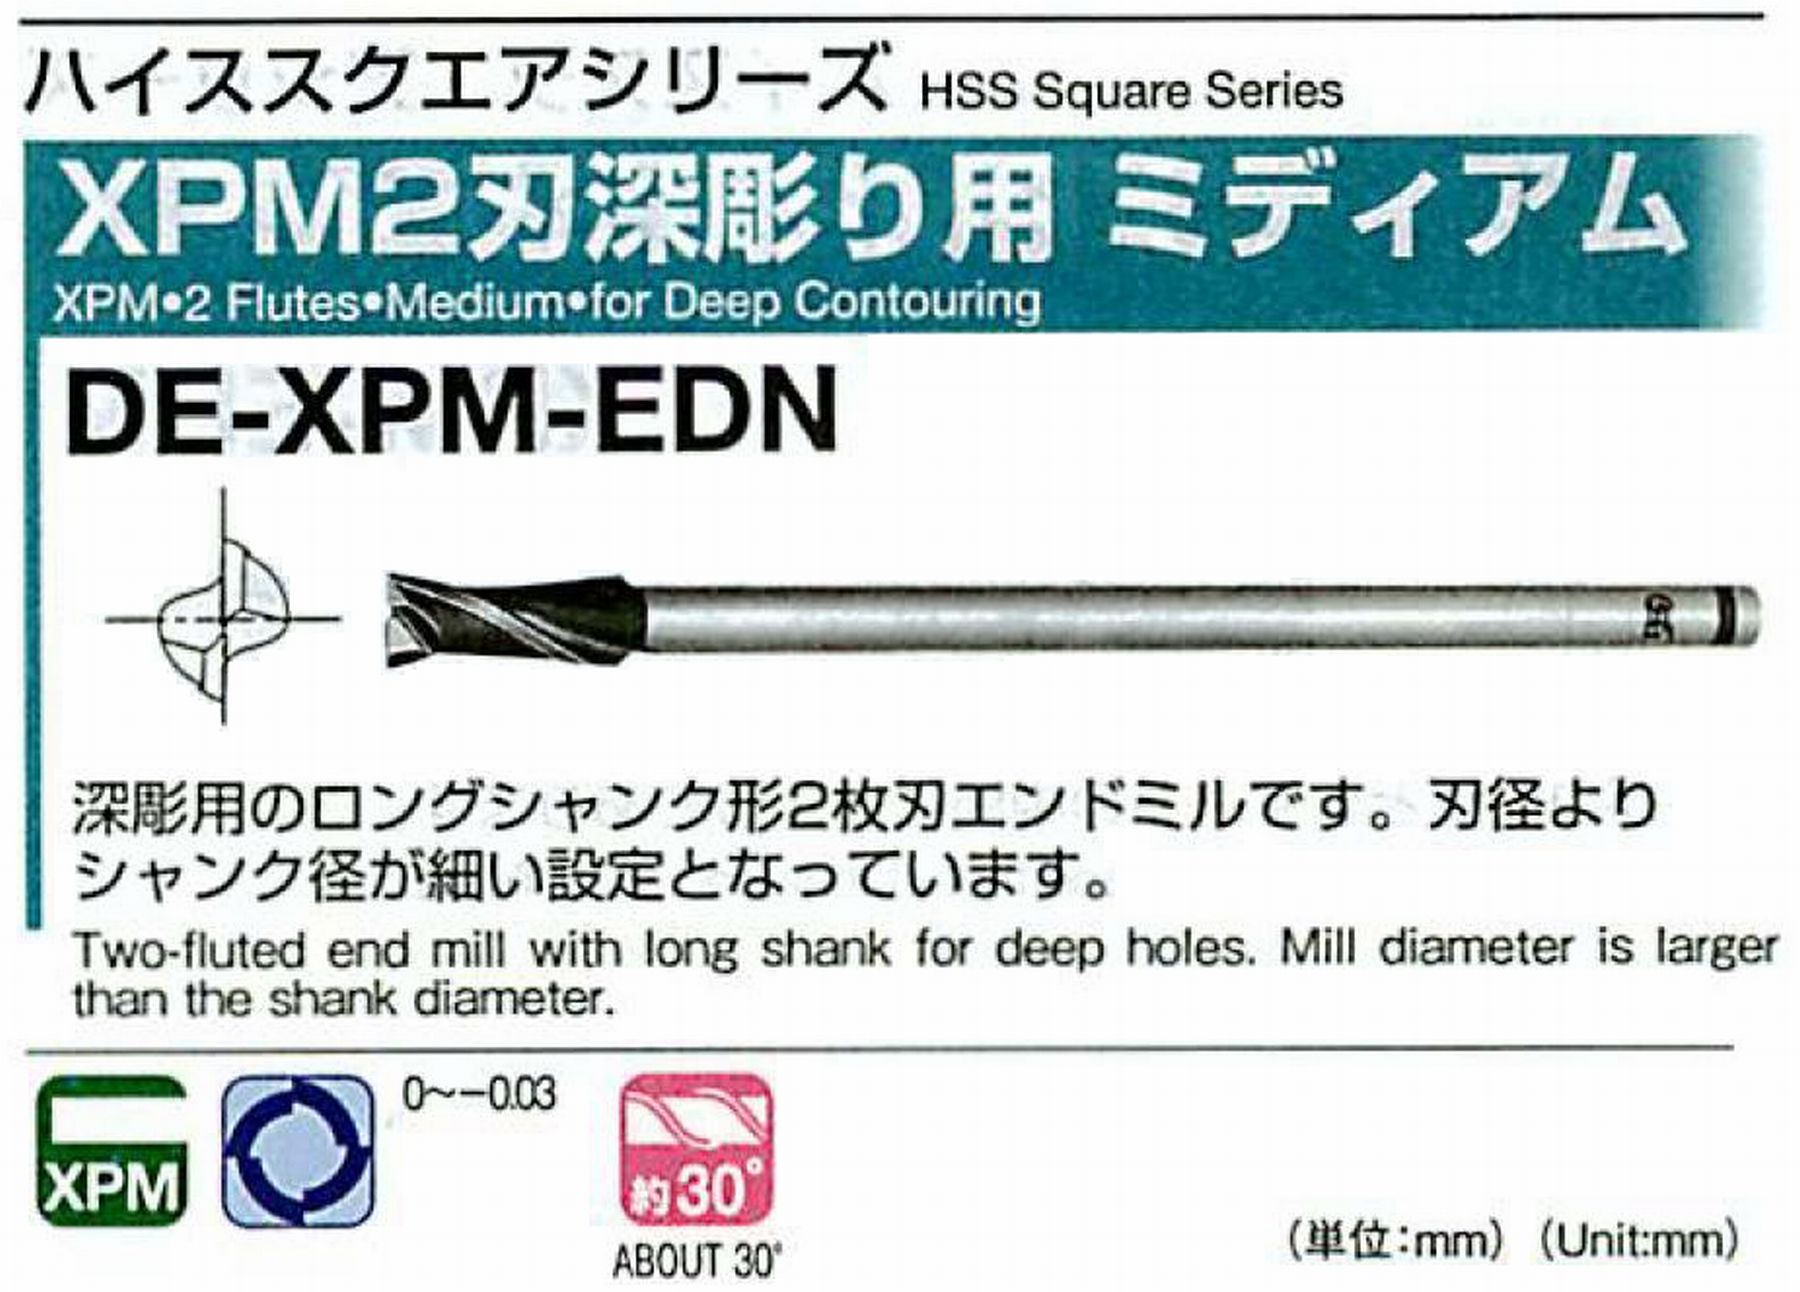 オーエスジー/OSG XPM2刃深彫り用 ミディアム DE-XPM-EDN 外径8 全長80 刃長20 シャンク径6mm